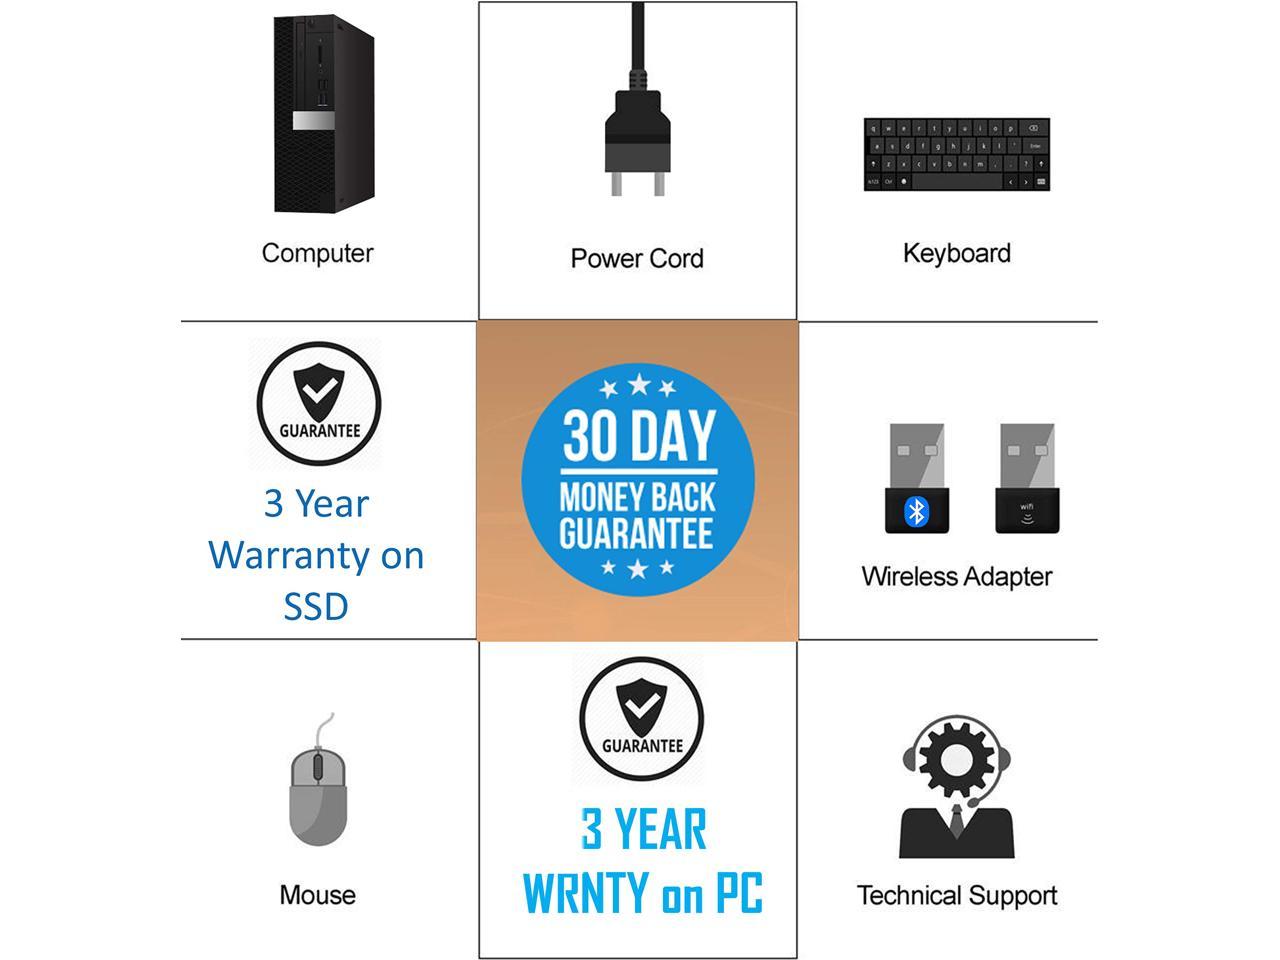 500GB HDD HP EliteDesk 800 G1 Small Form Desktop Computer WI-FI Windows 10 Pro NVIDIA GT 710 HDMI 4K Support Intel i7-4770 VGA Renewed 256GB SSD 32GB Ram